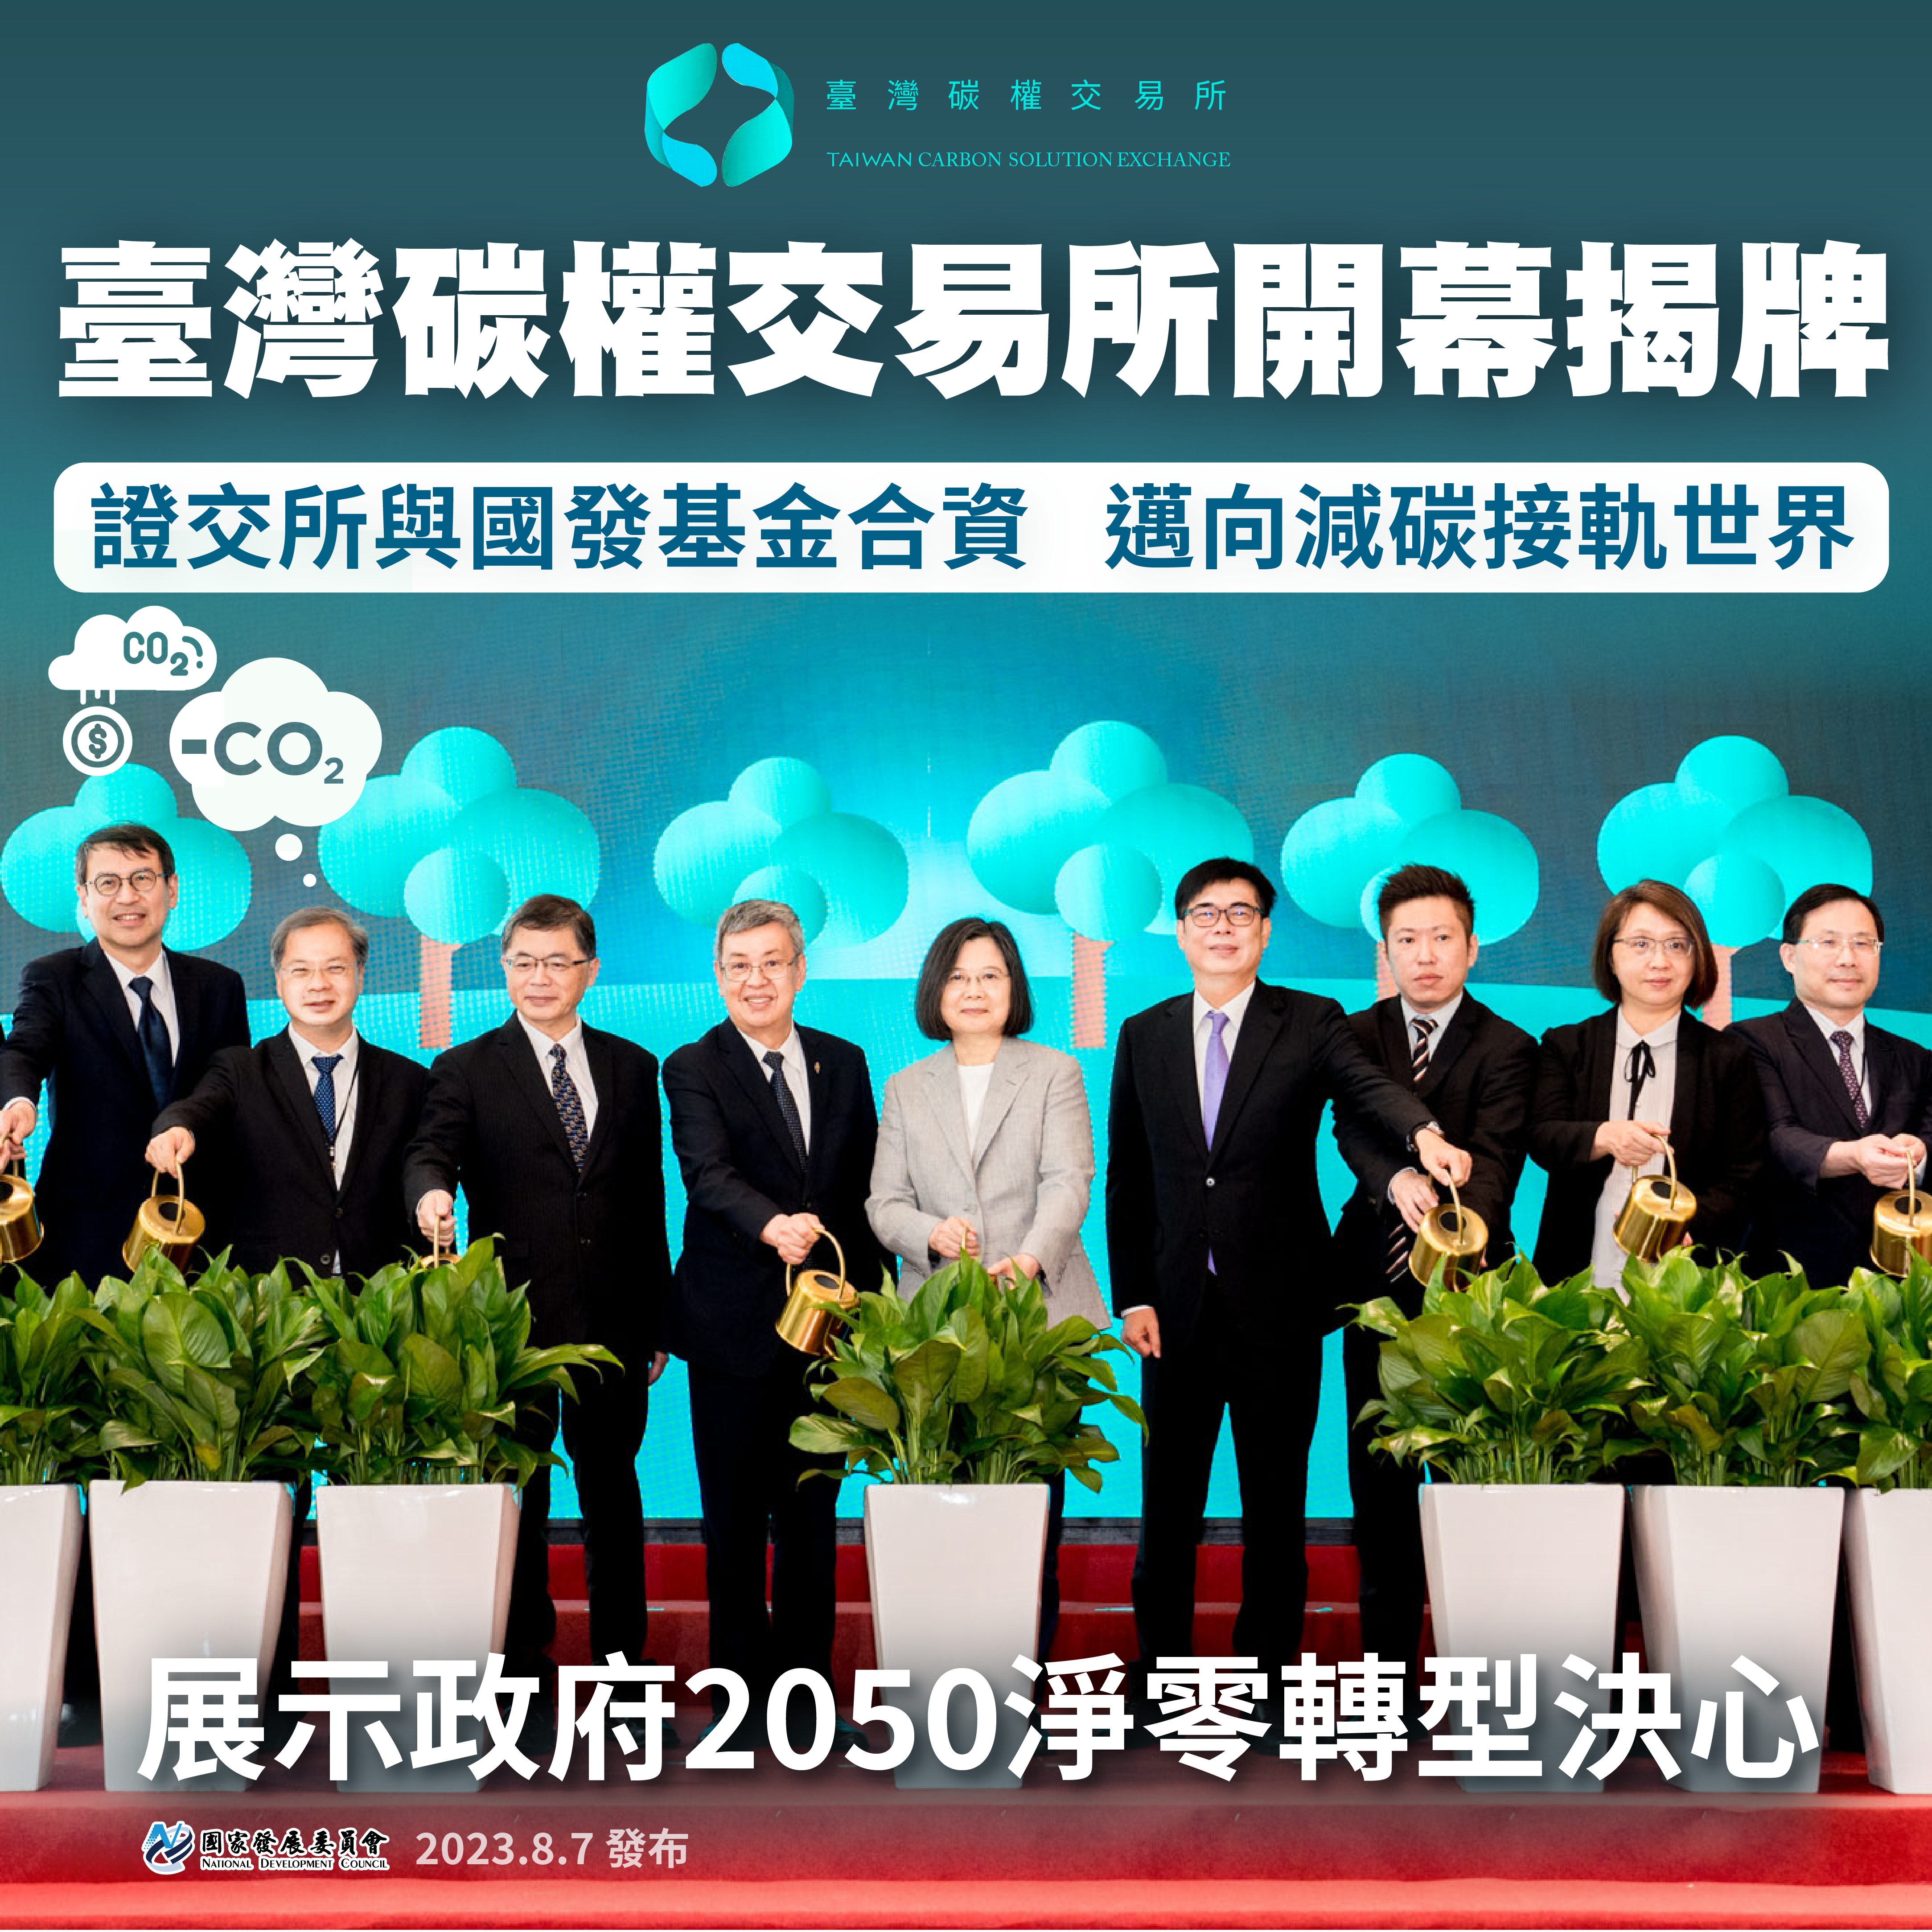 【國發基金X證交所】臺灣碳權交易所揭牌  減碳目標關鍵助力